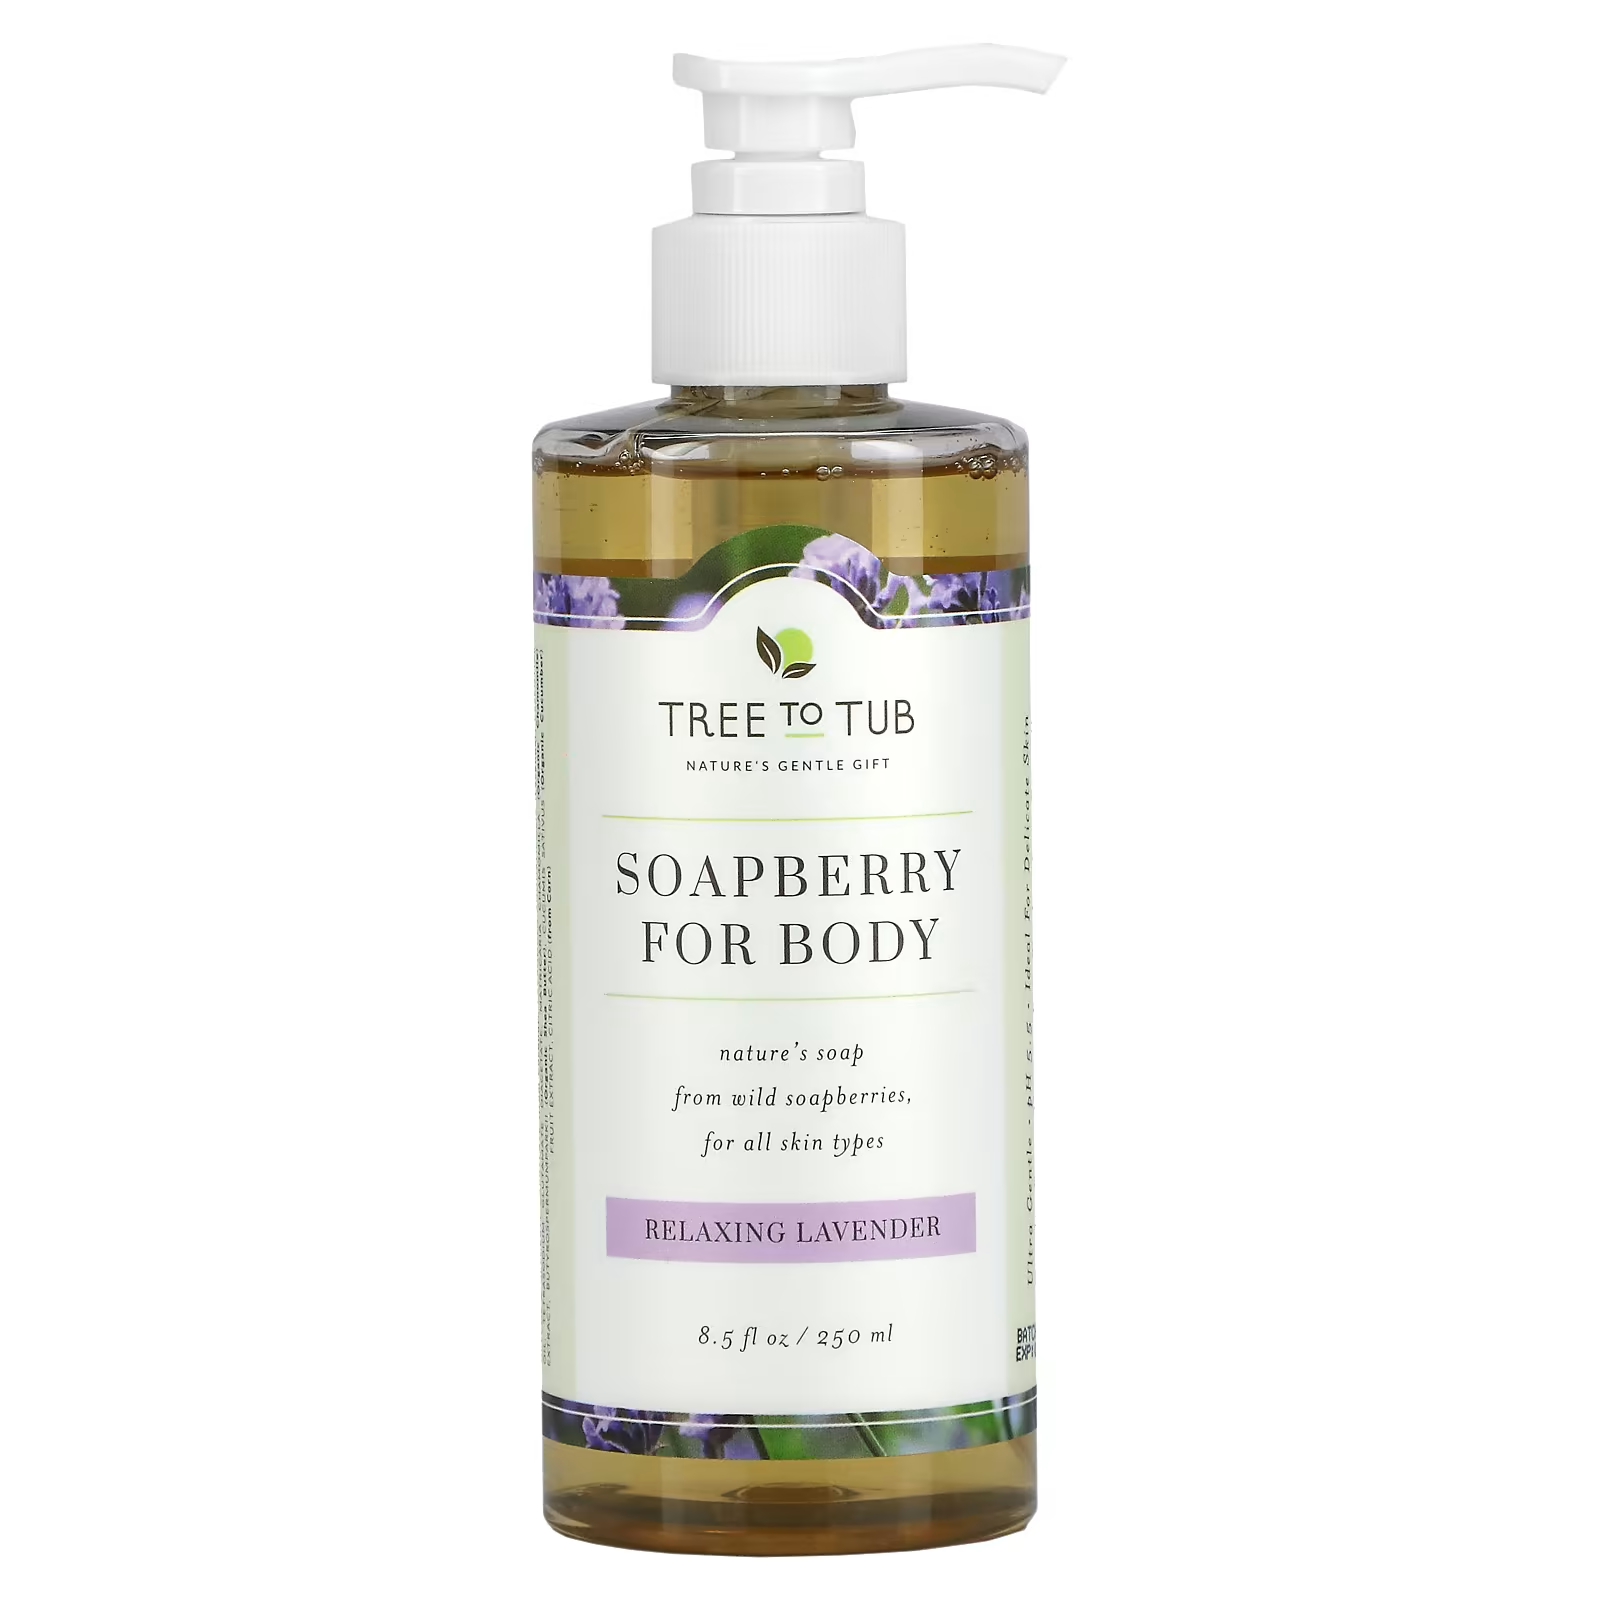 Tree To Tub Soapberry Увлажняющее мыло для душа без сульфатов, pH-сбалансированное для сухой чувствительной кожи с лавандой, 8,5 жидких унций (250 мл)